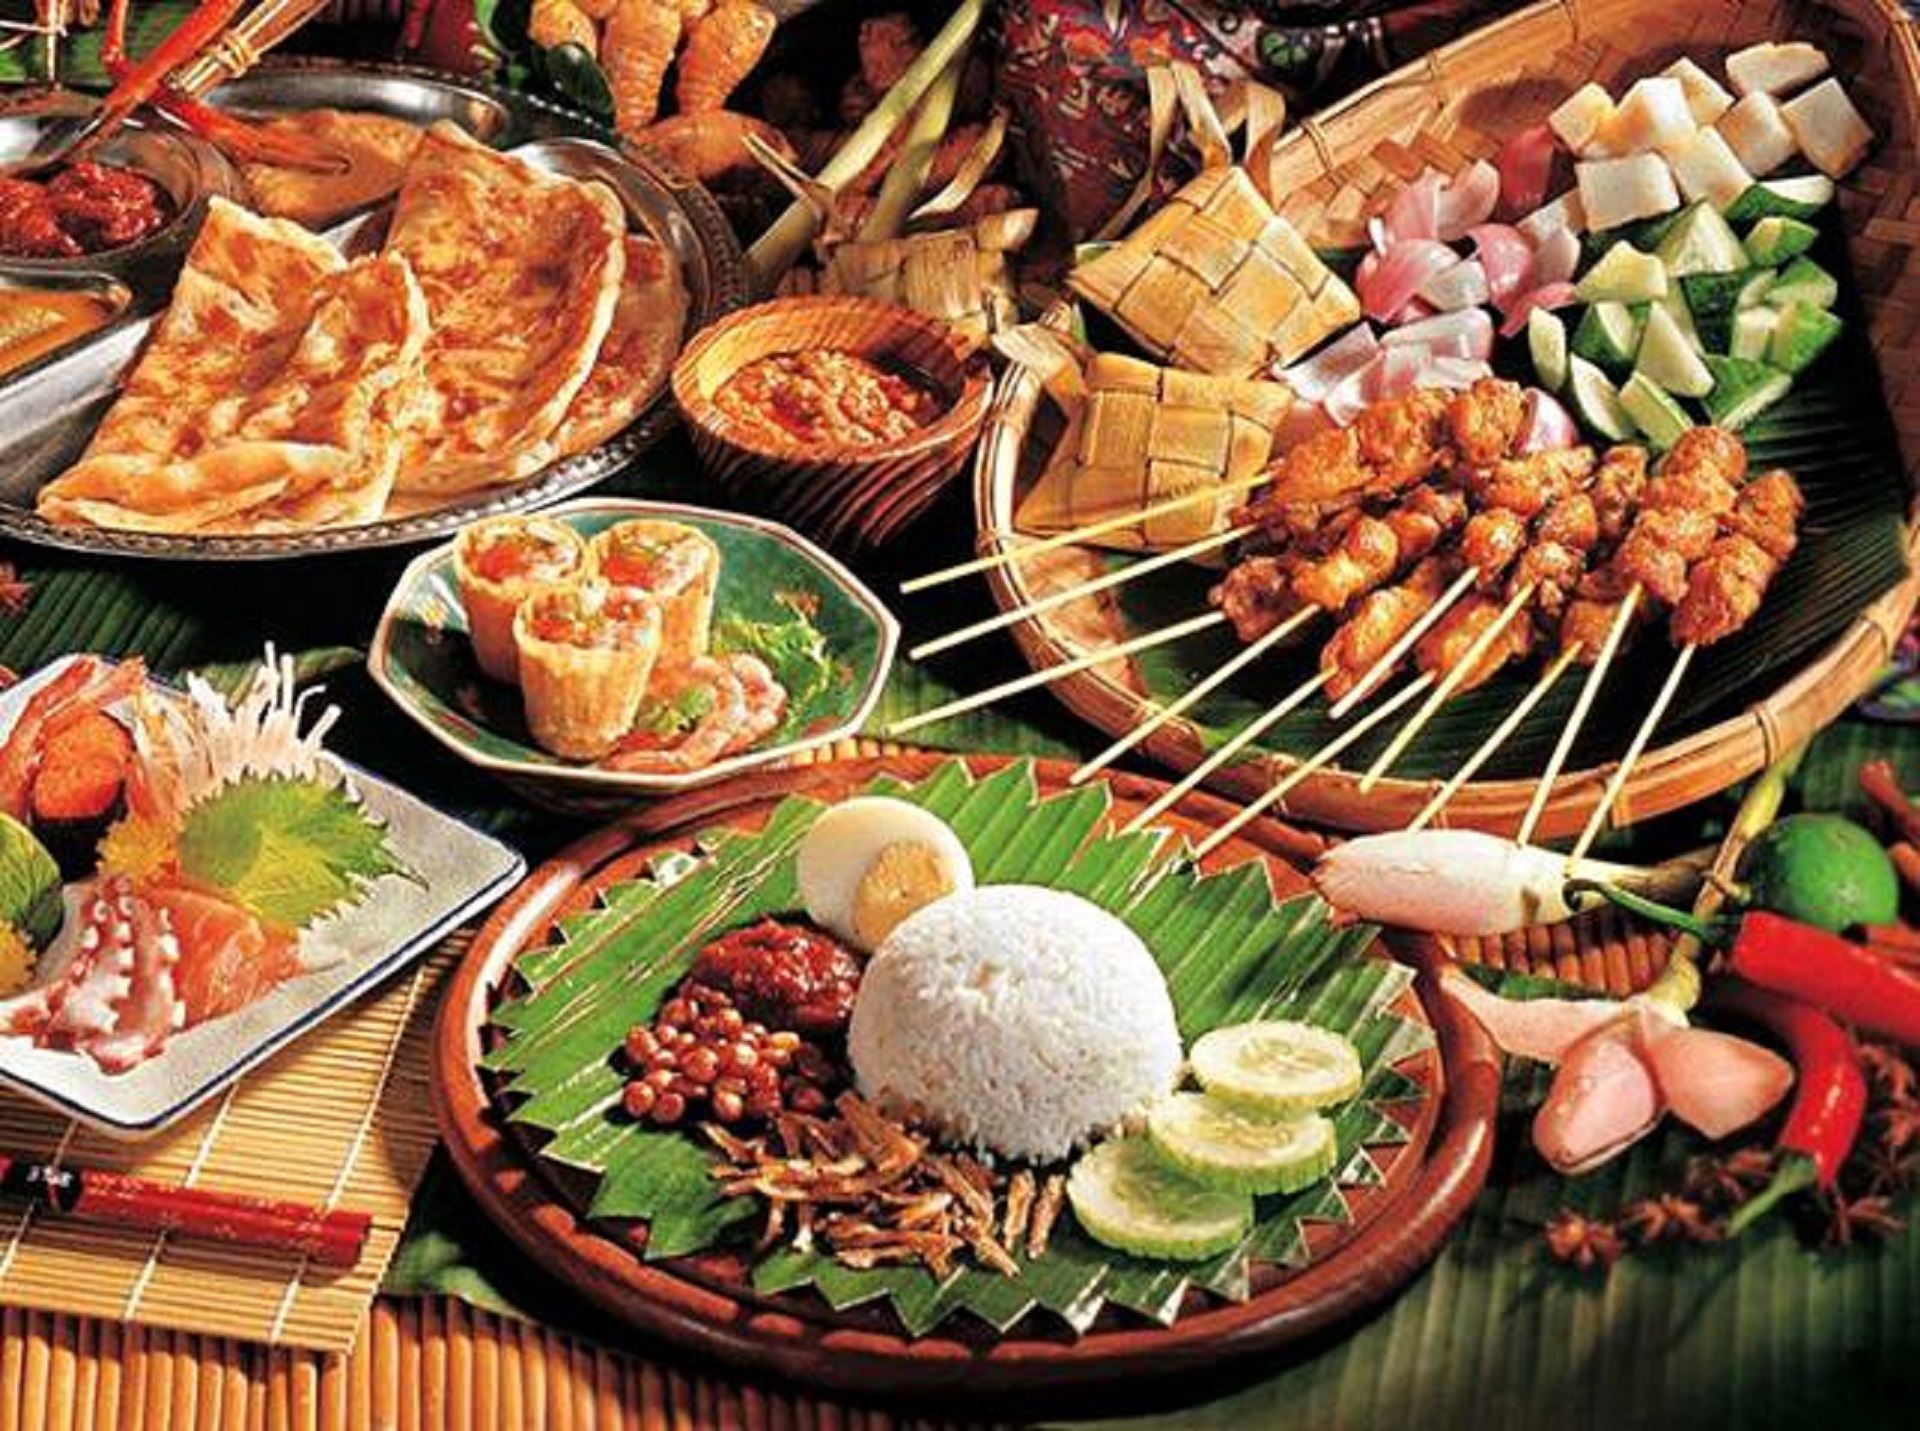 马来西亚美食大攻略-4大菜系、必吃美食和知名餐厅 - 知乎